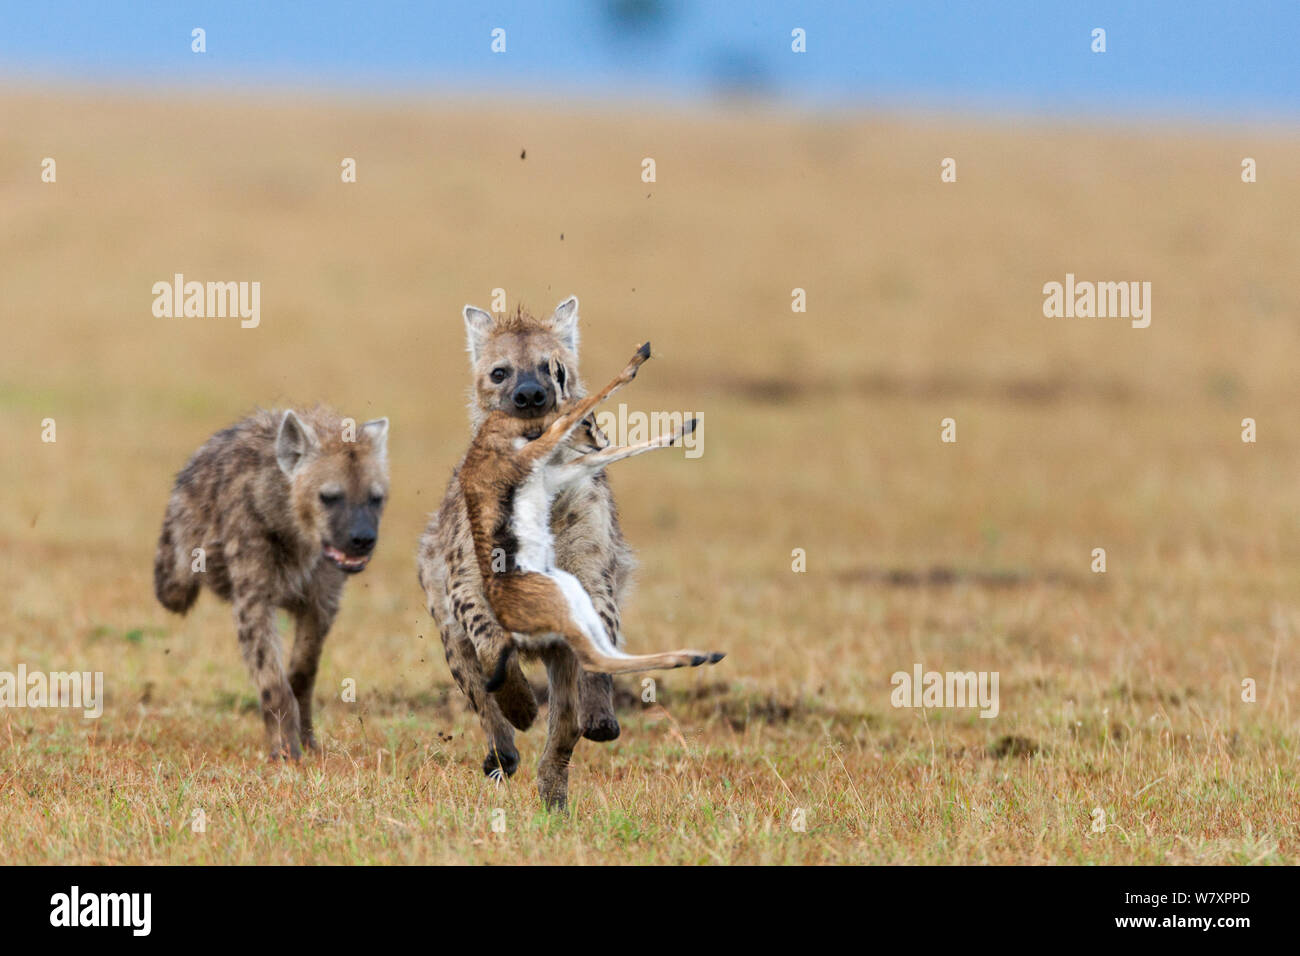 Les Hyènes tachetées (Crocuta crocuta) antérieurs à Thomson bébé&# 39;s (Eudorcas thomsonii gazelle) Masai-Mara game reserve, Kenya. Banque D'Images